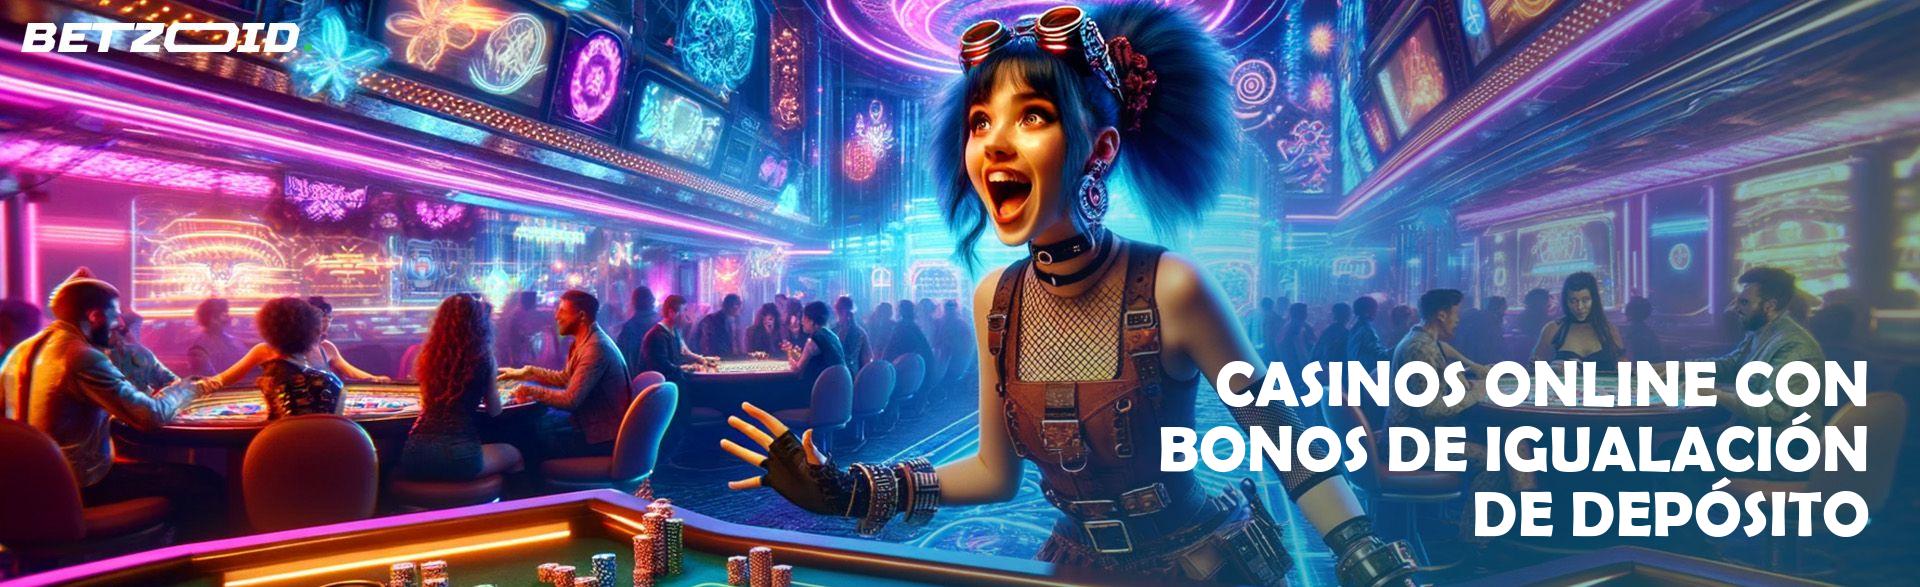 Casinos Online con Bonos de Igualación de Depósito.